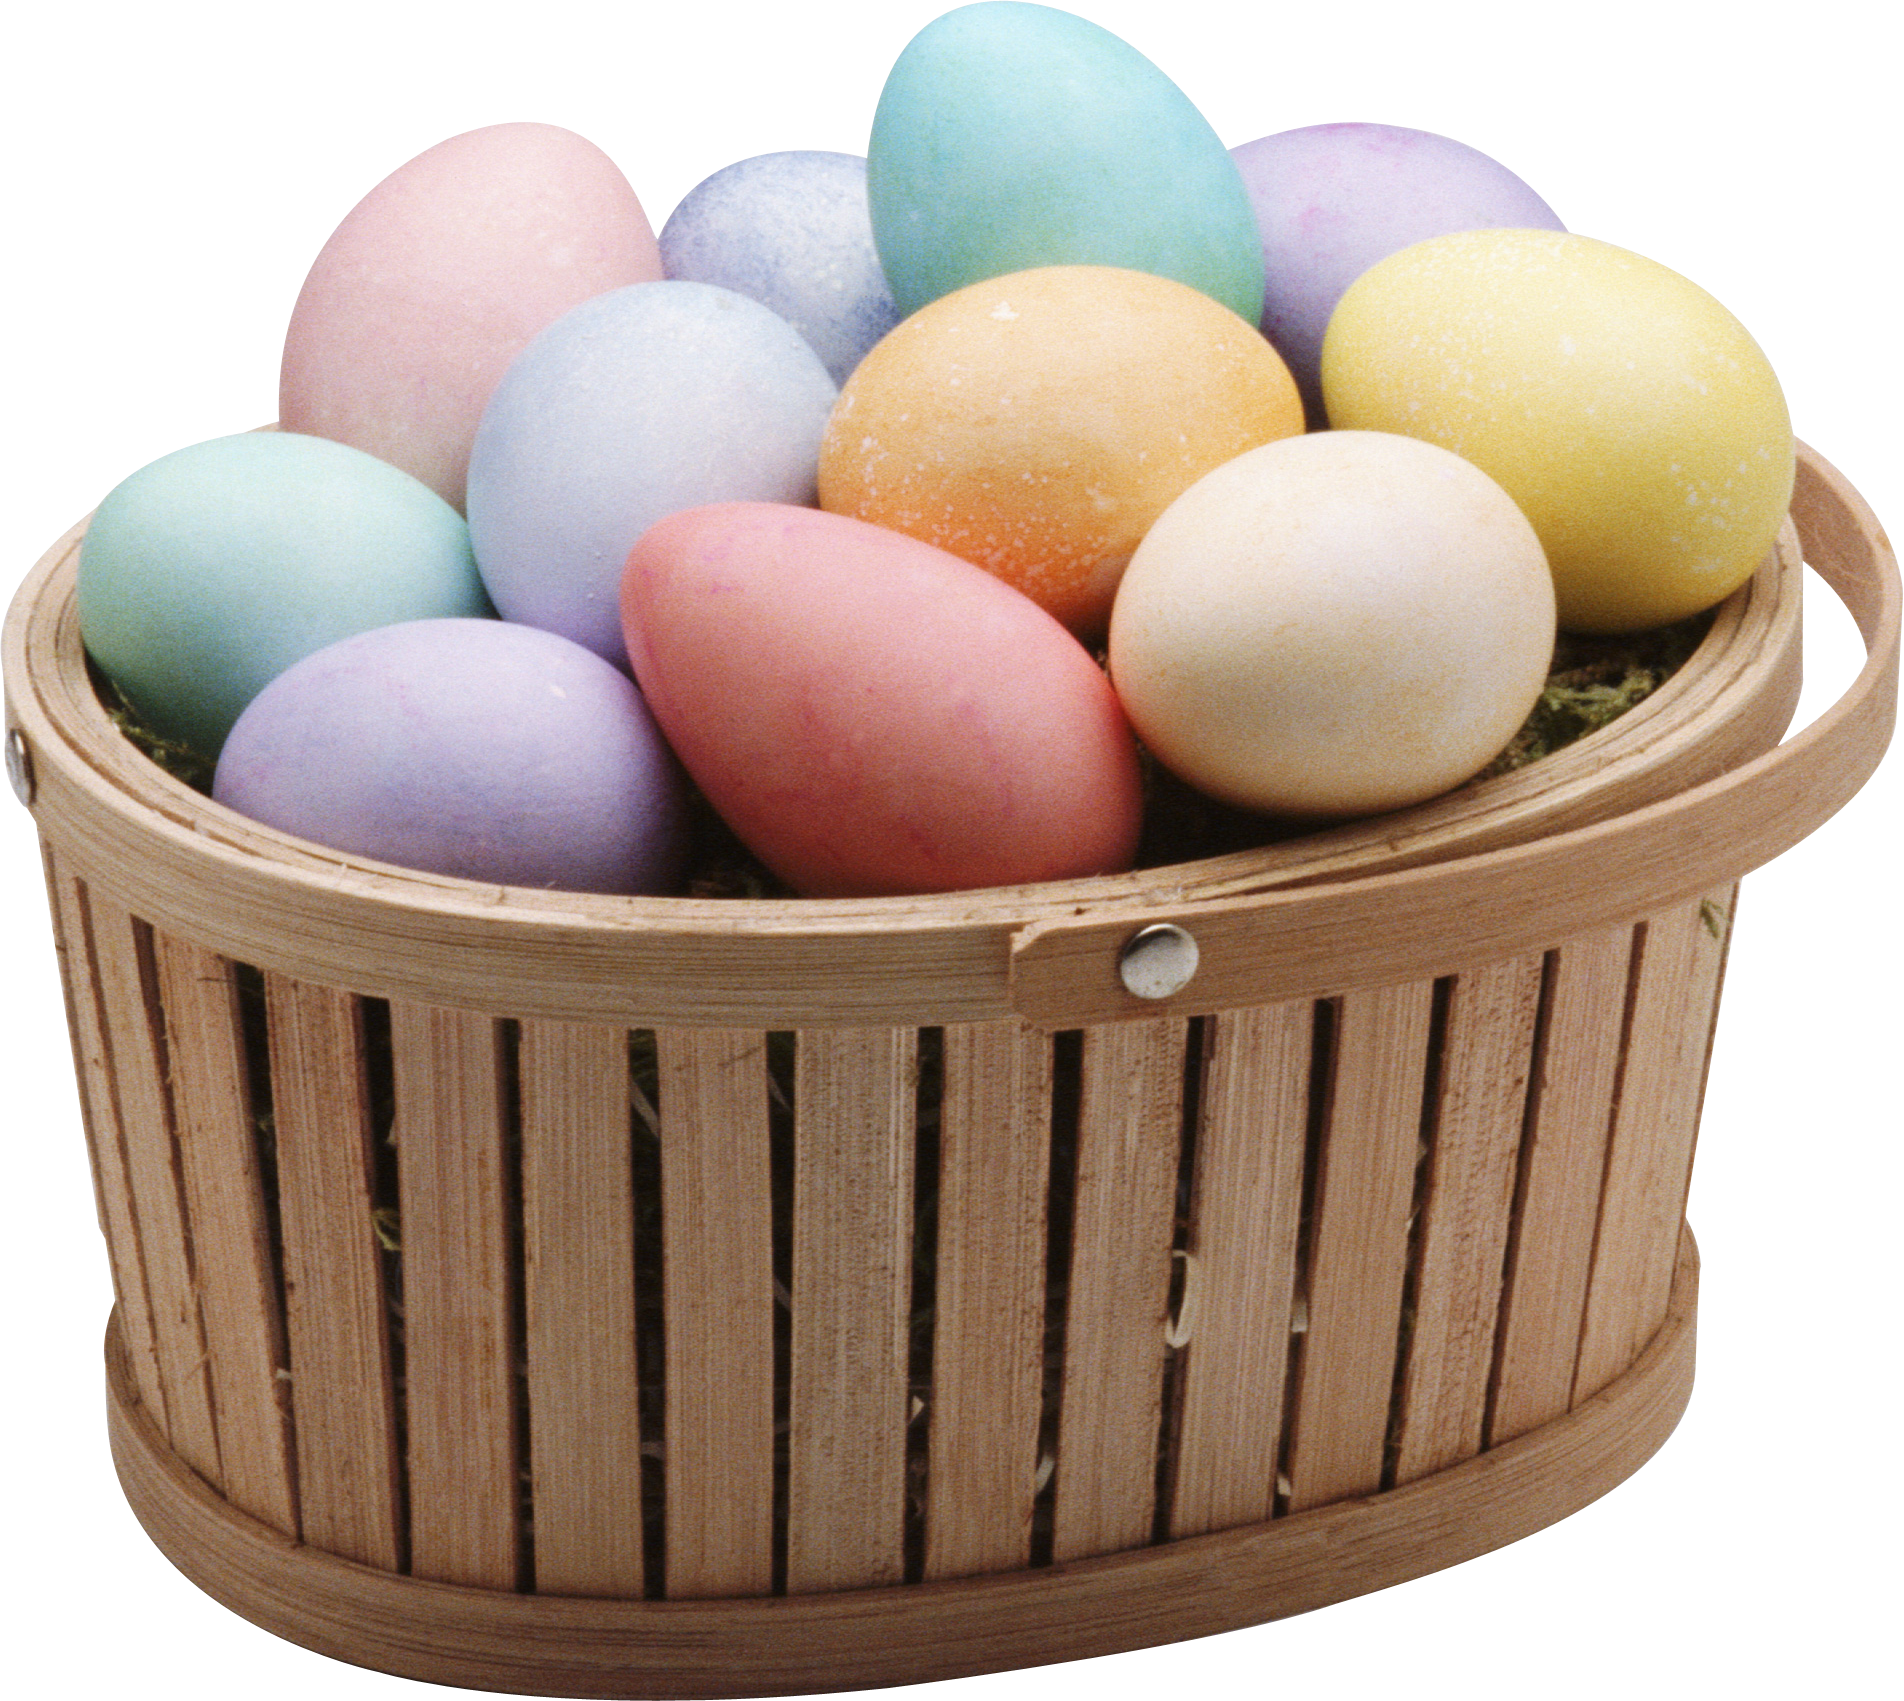 Những quả trứng đầy màu sắc trong giỏ